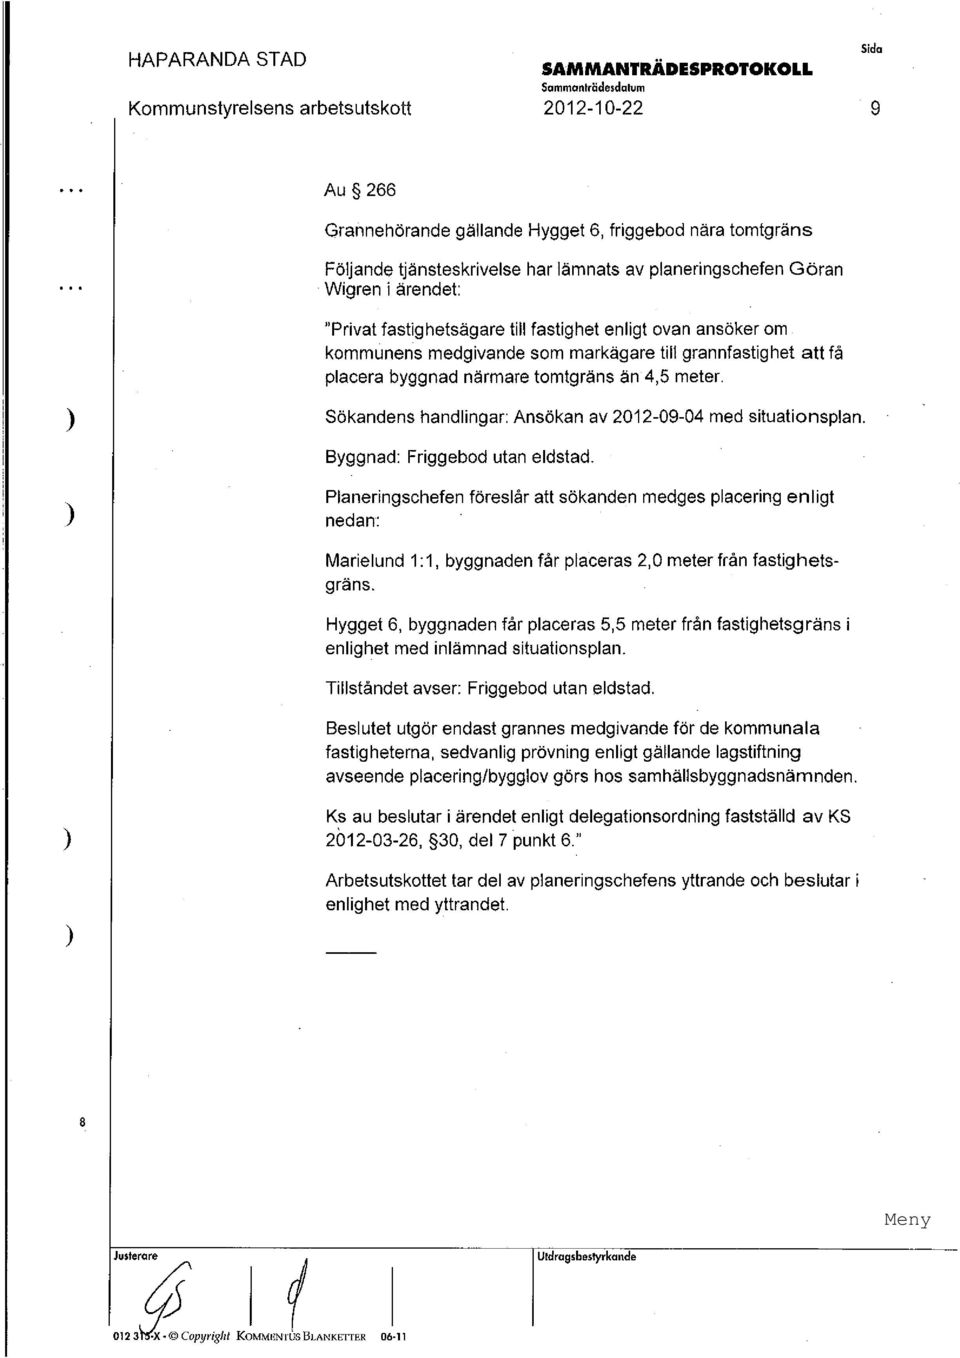 Sökandens handlingar : Ansökan av 2012-09-04 med situationsplan. Byggnad: Friggebod utan eldstad.